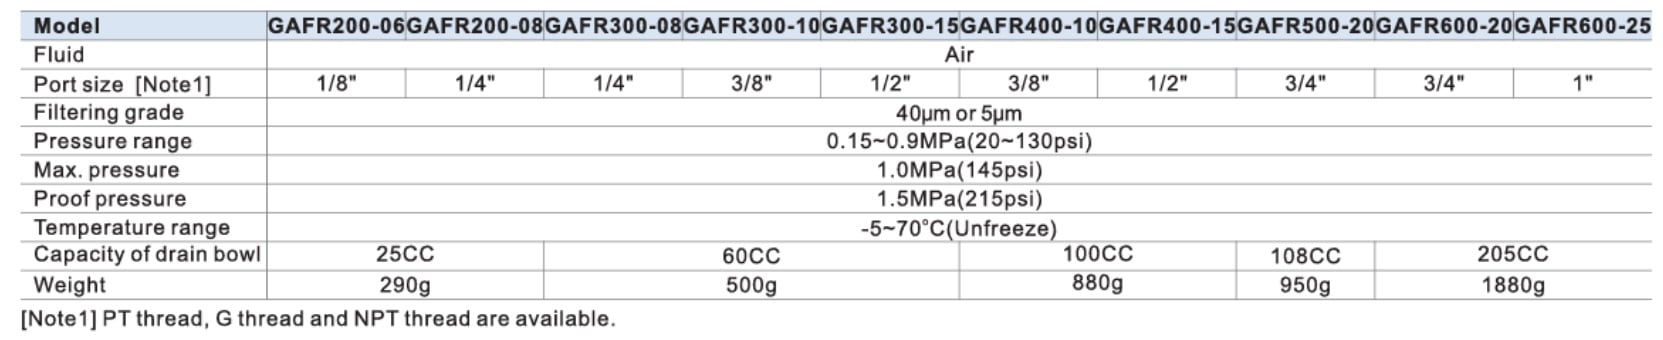 imagem das especificações do filtro regulador GAFR da Airtac